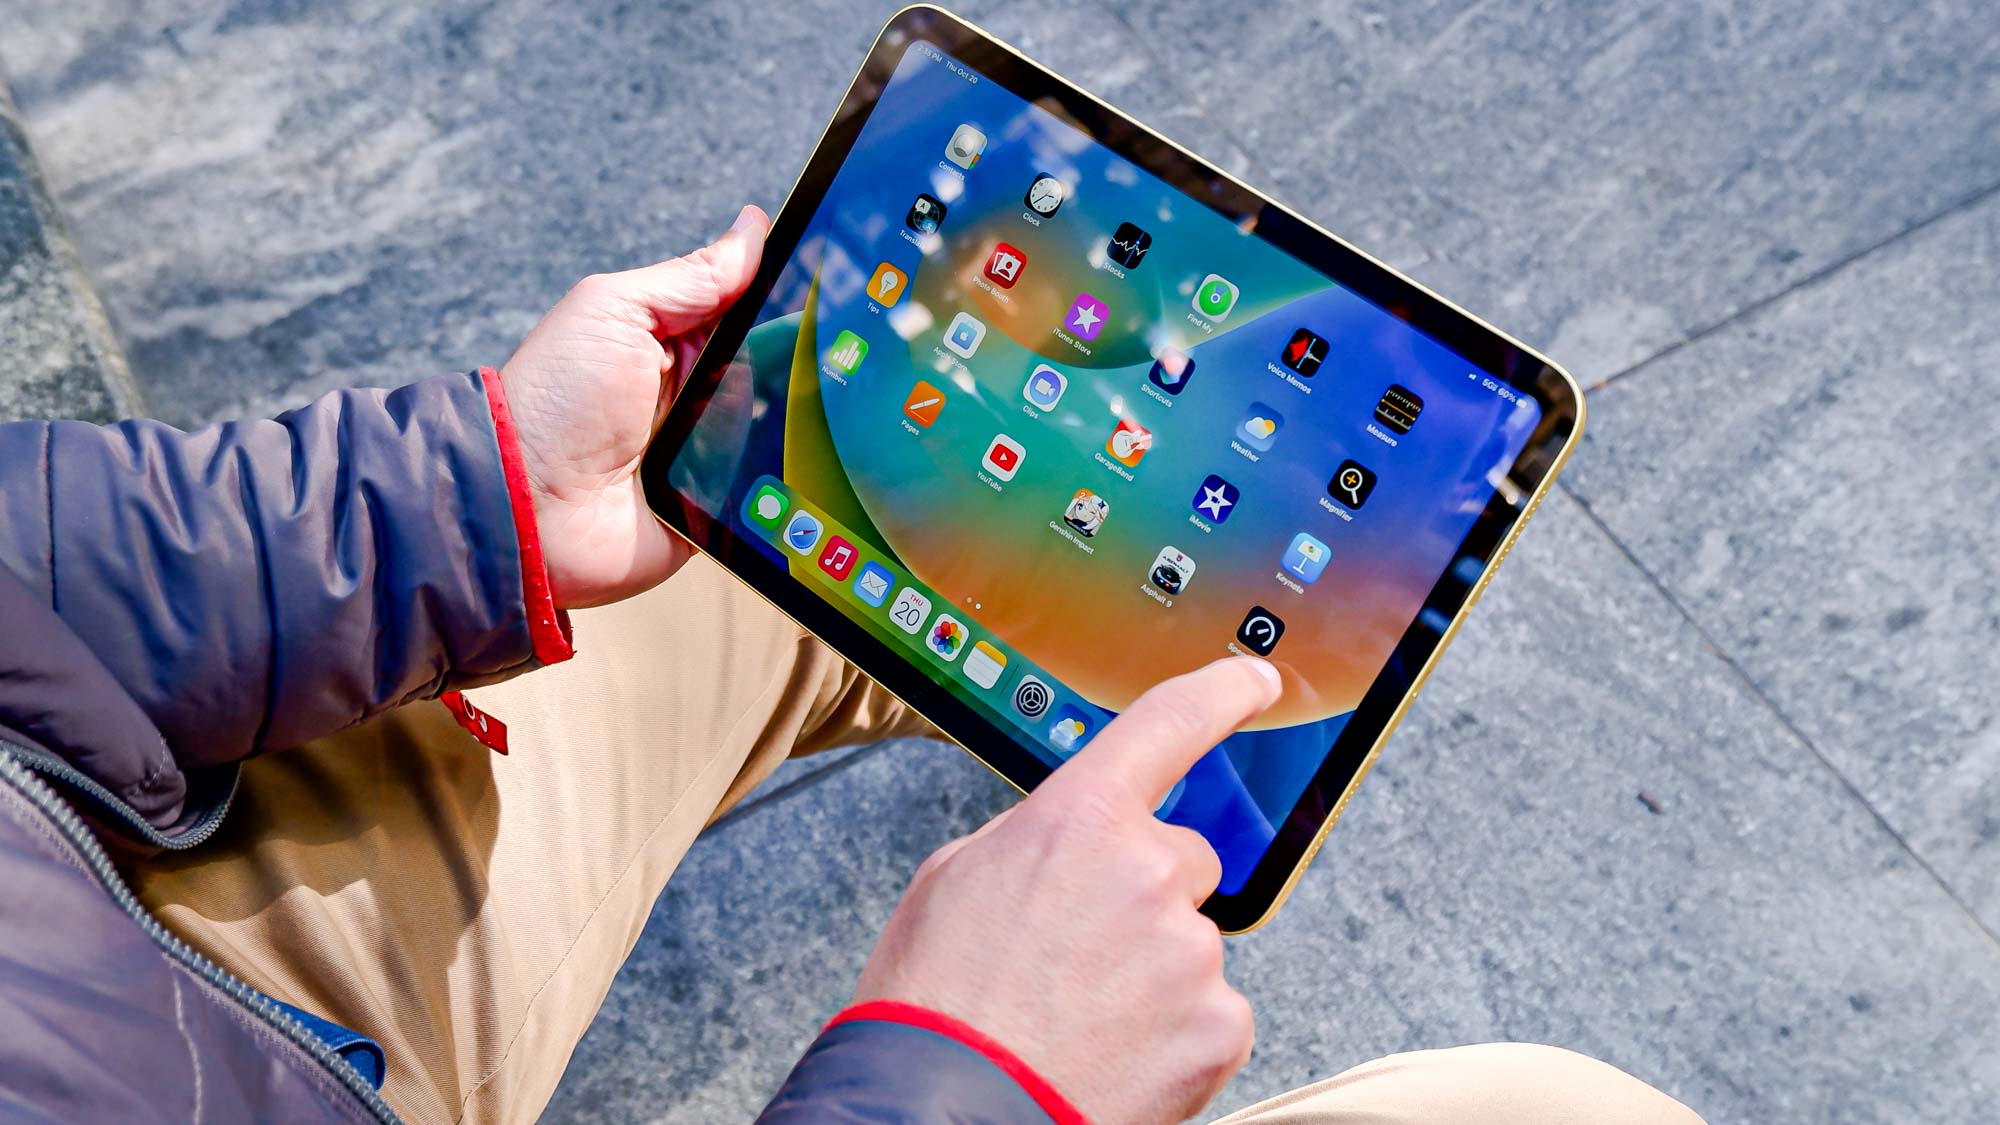 אייפד דור 10 בידיים הגולשות במסך הבית של מערכת ההפעלה iPad